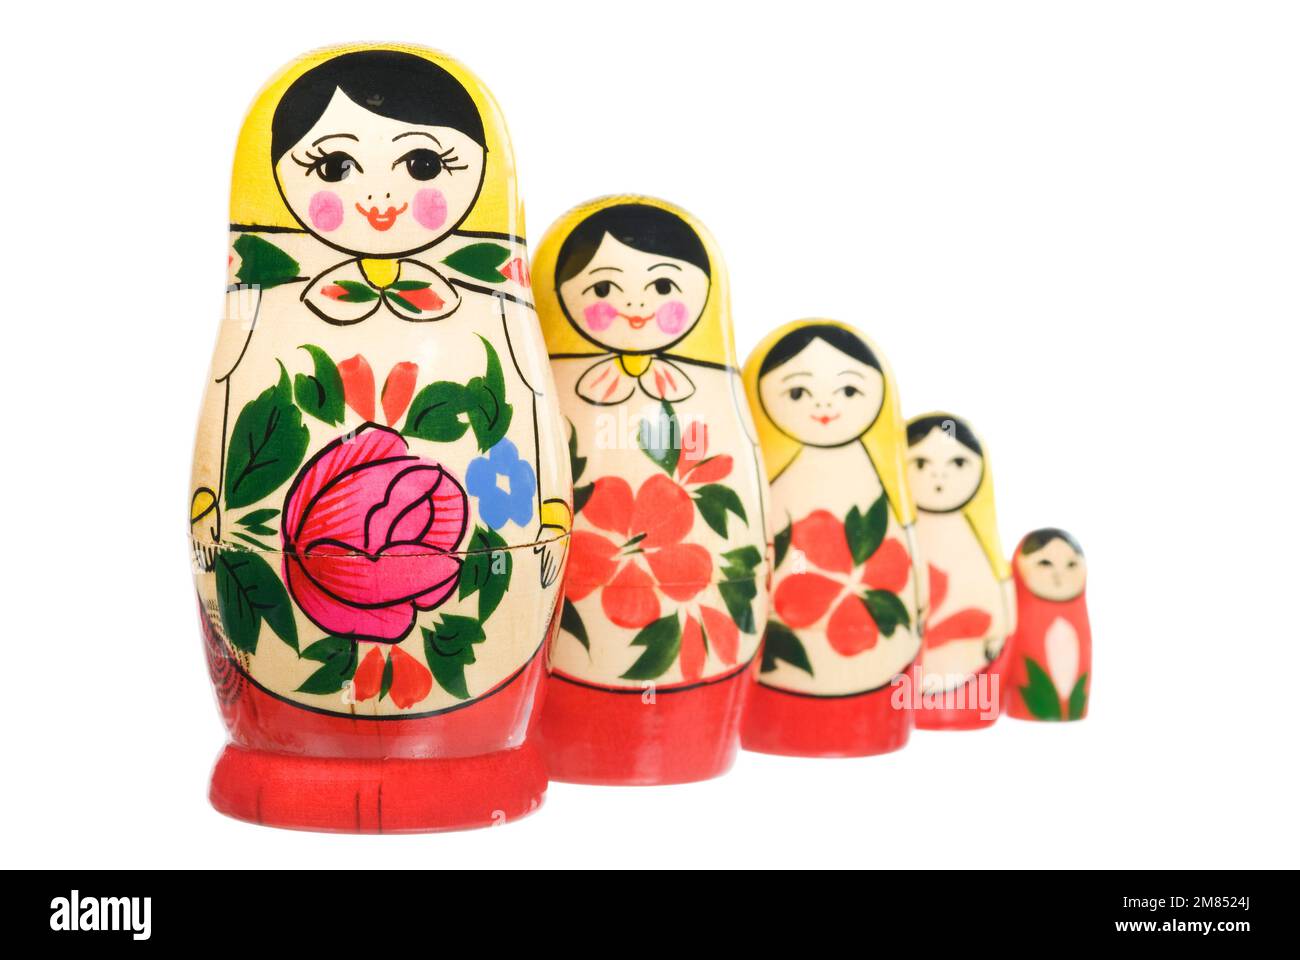 Jeu traditionnel russe de poupées en bois sur blanc Banque D'Images